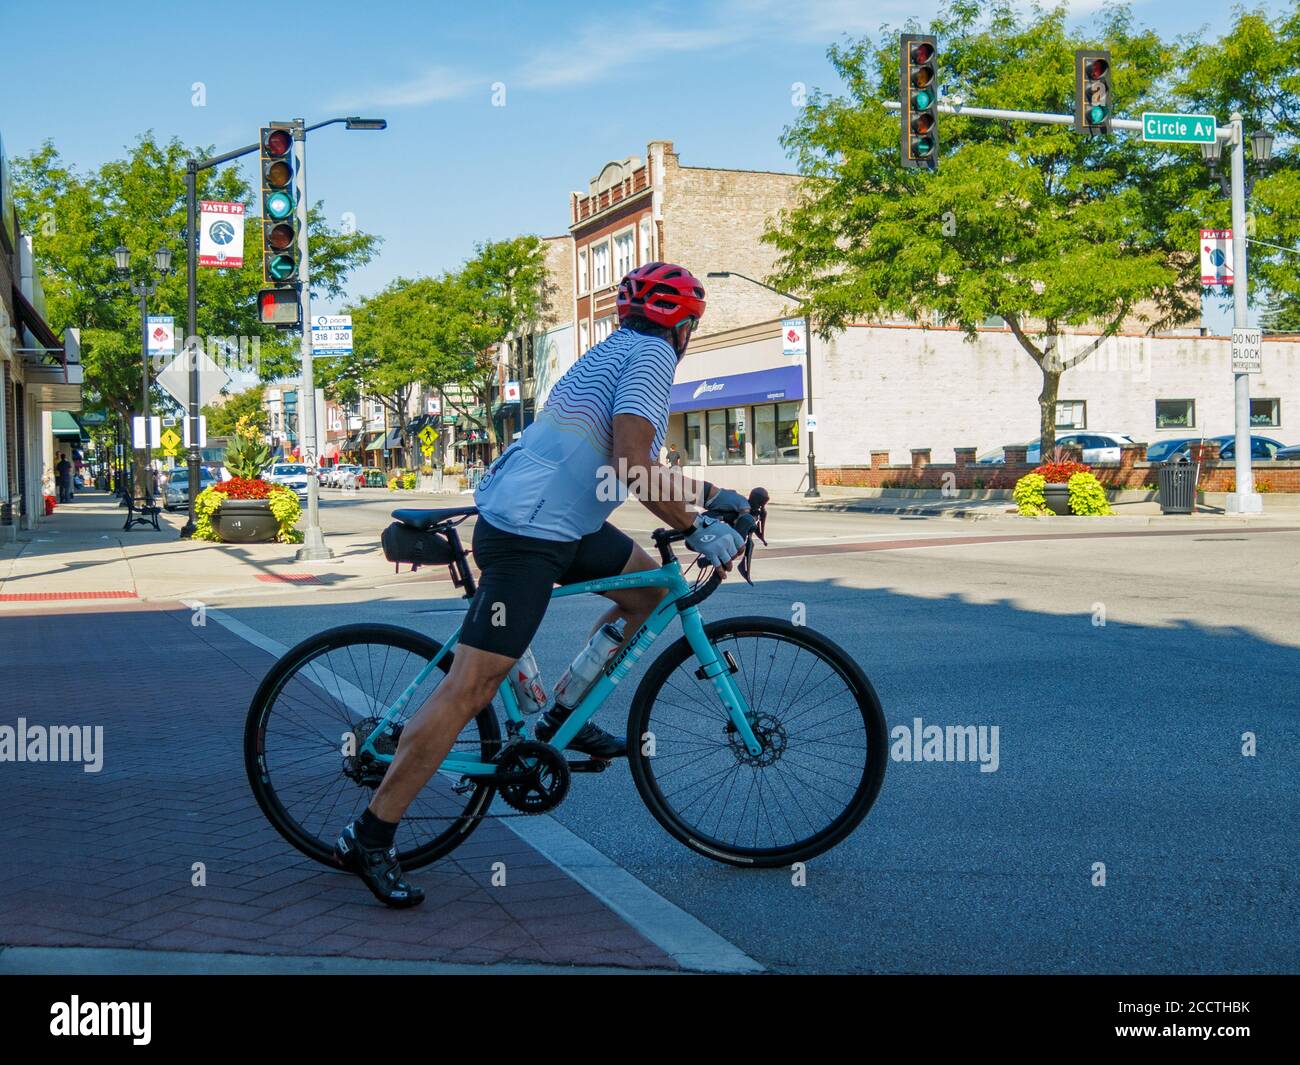 Ciclista che si prepara all'intersezione incrociata. Forest Park, Illinois. Foto Stock